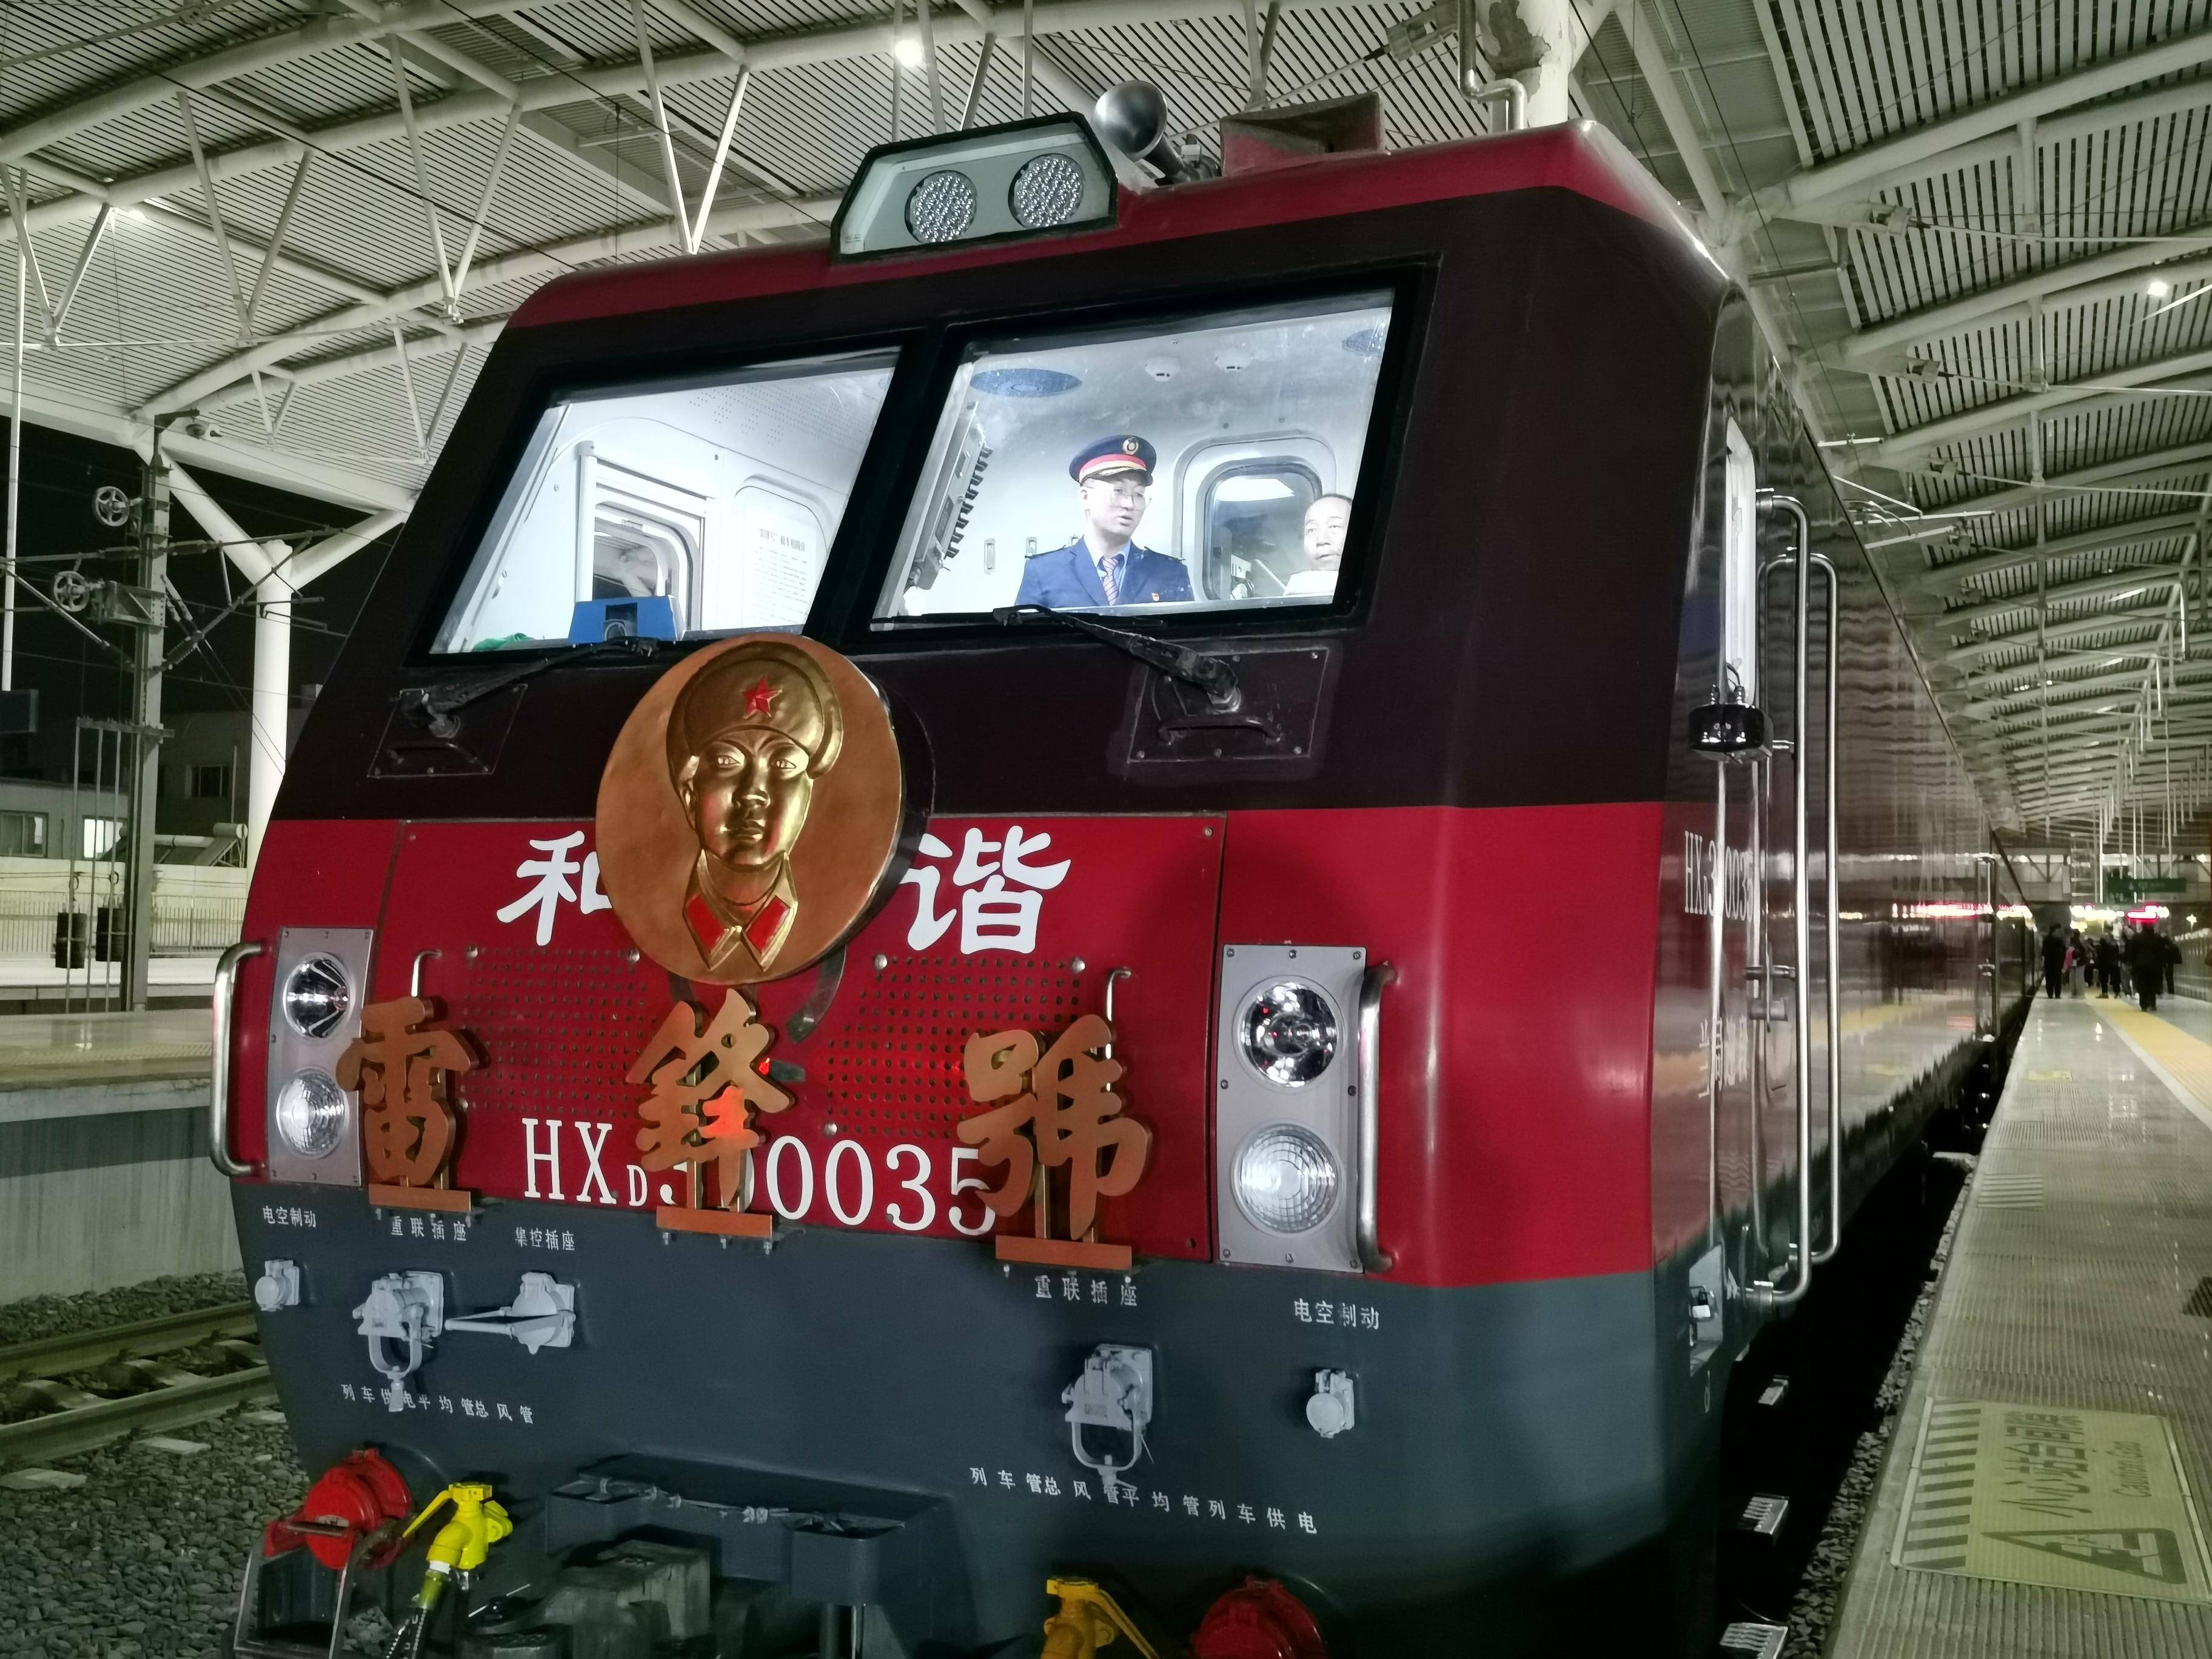 雷锋号机车担当z275次列车牵引任务首次进京